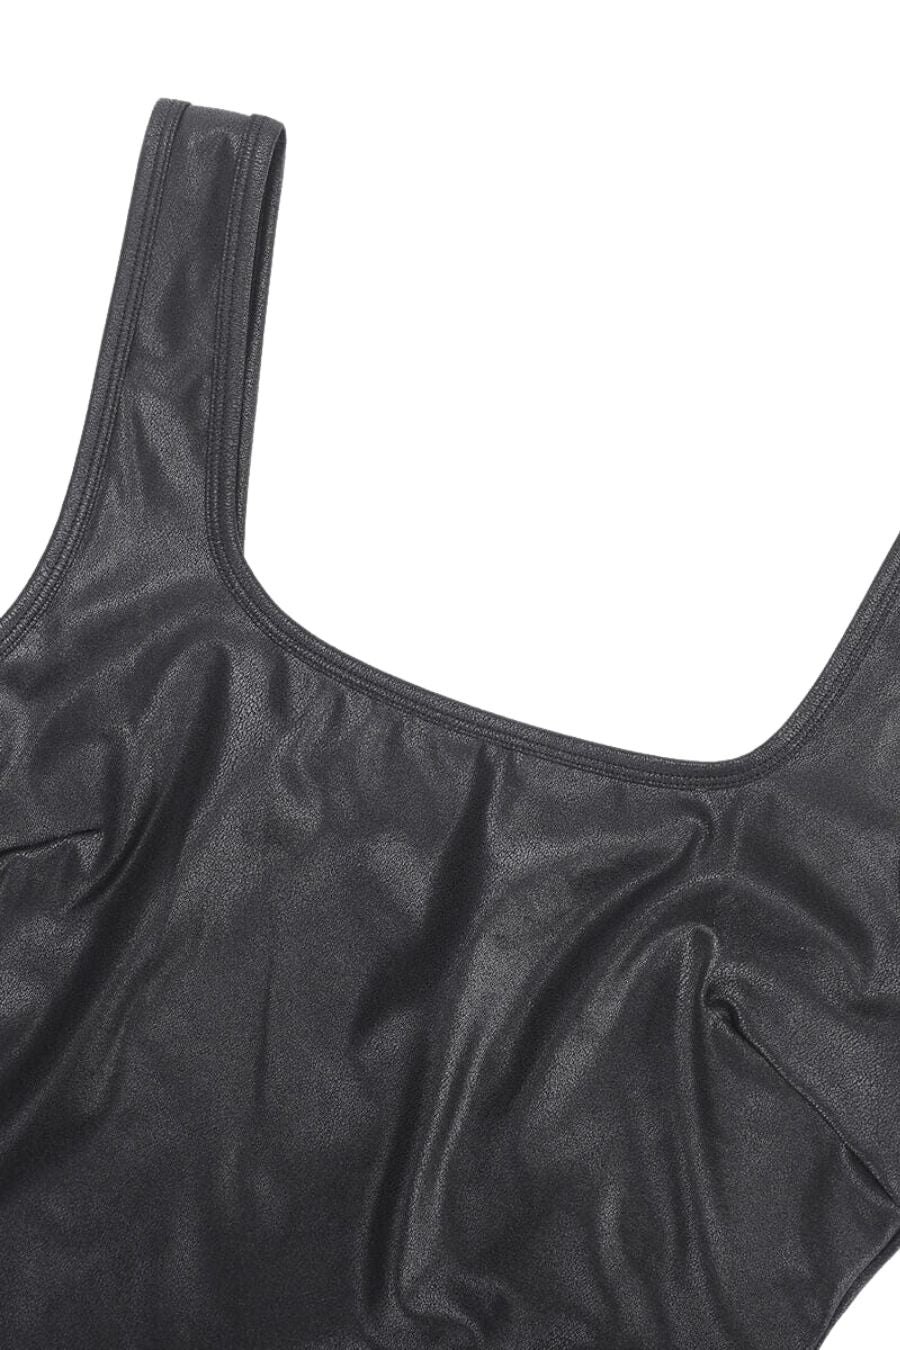 Angelina Shaping Bodysuit - Black Contour Clothing